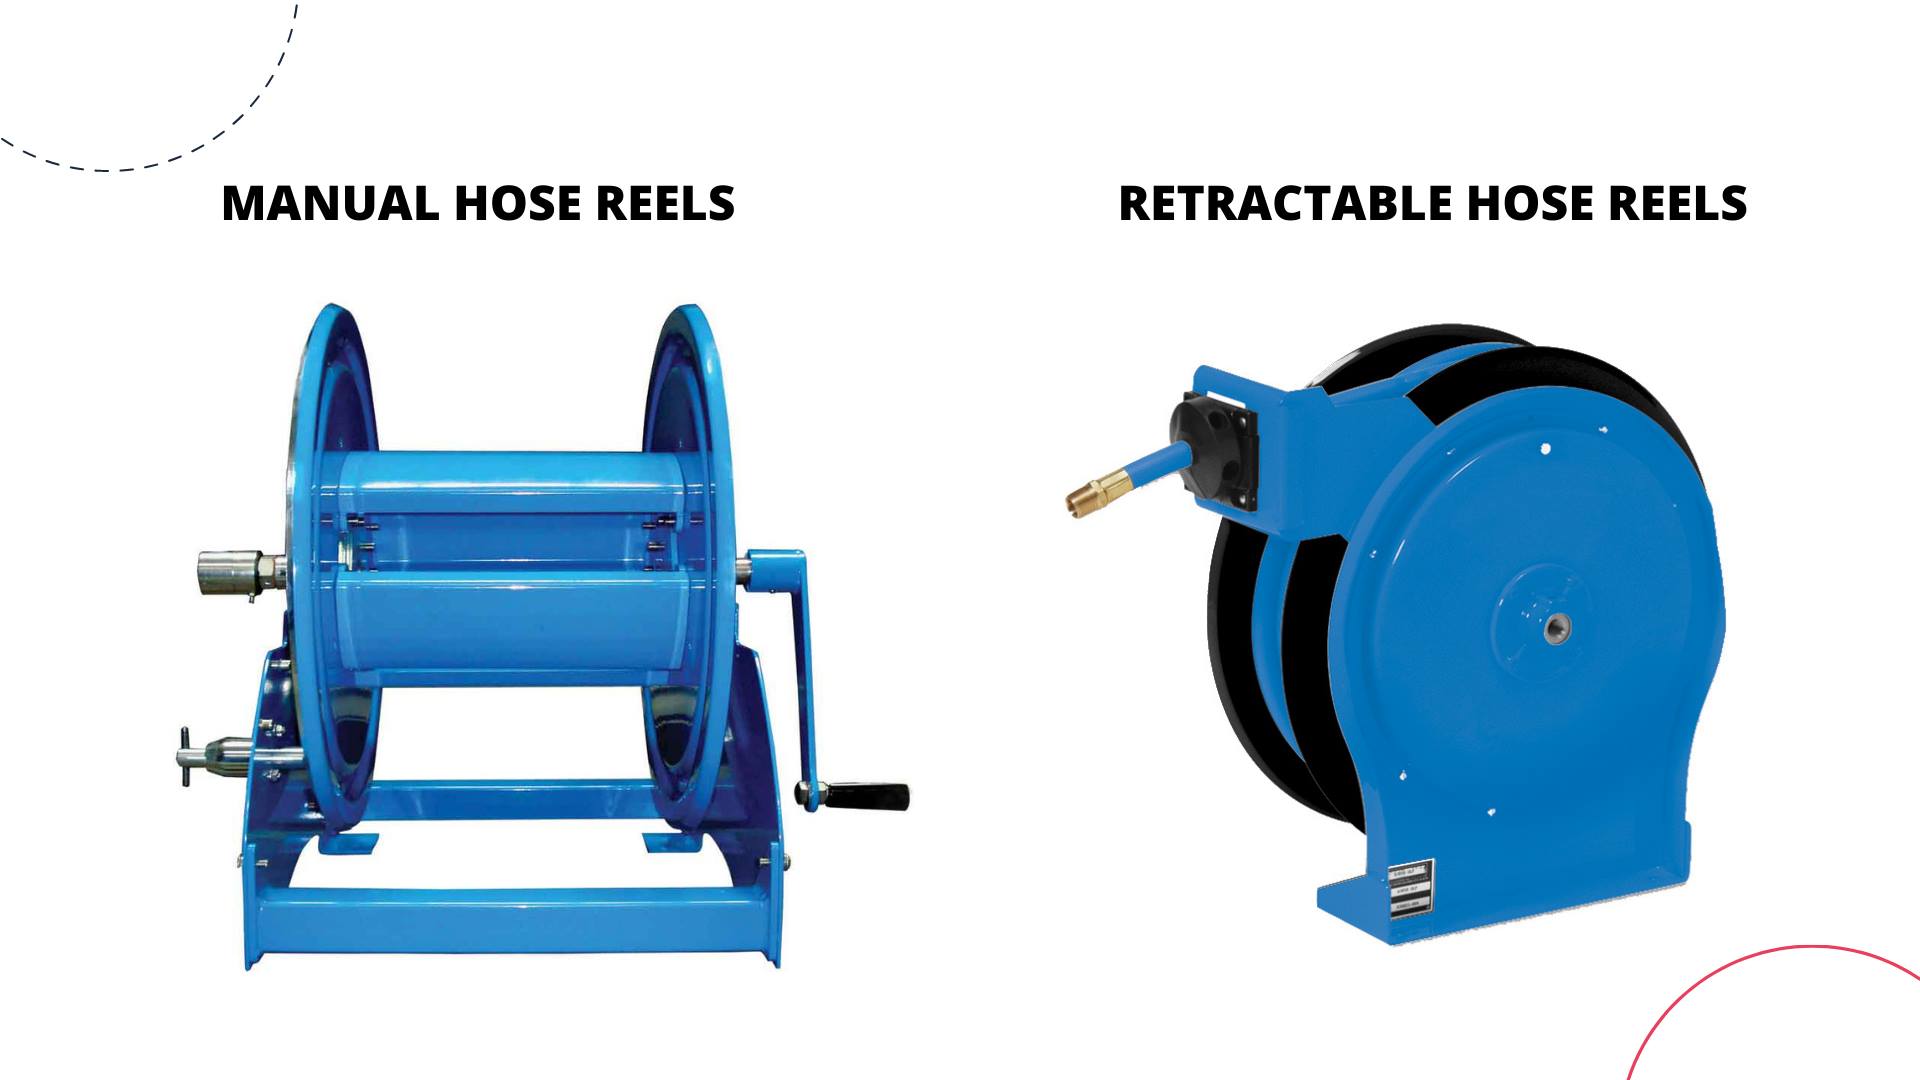 retractable vs manual hose reels